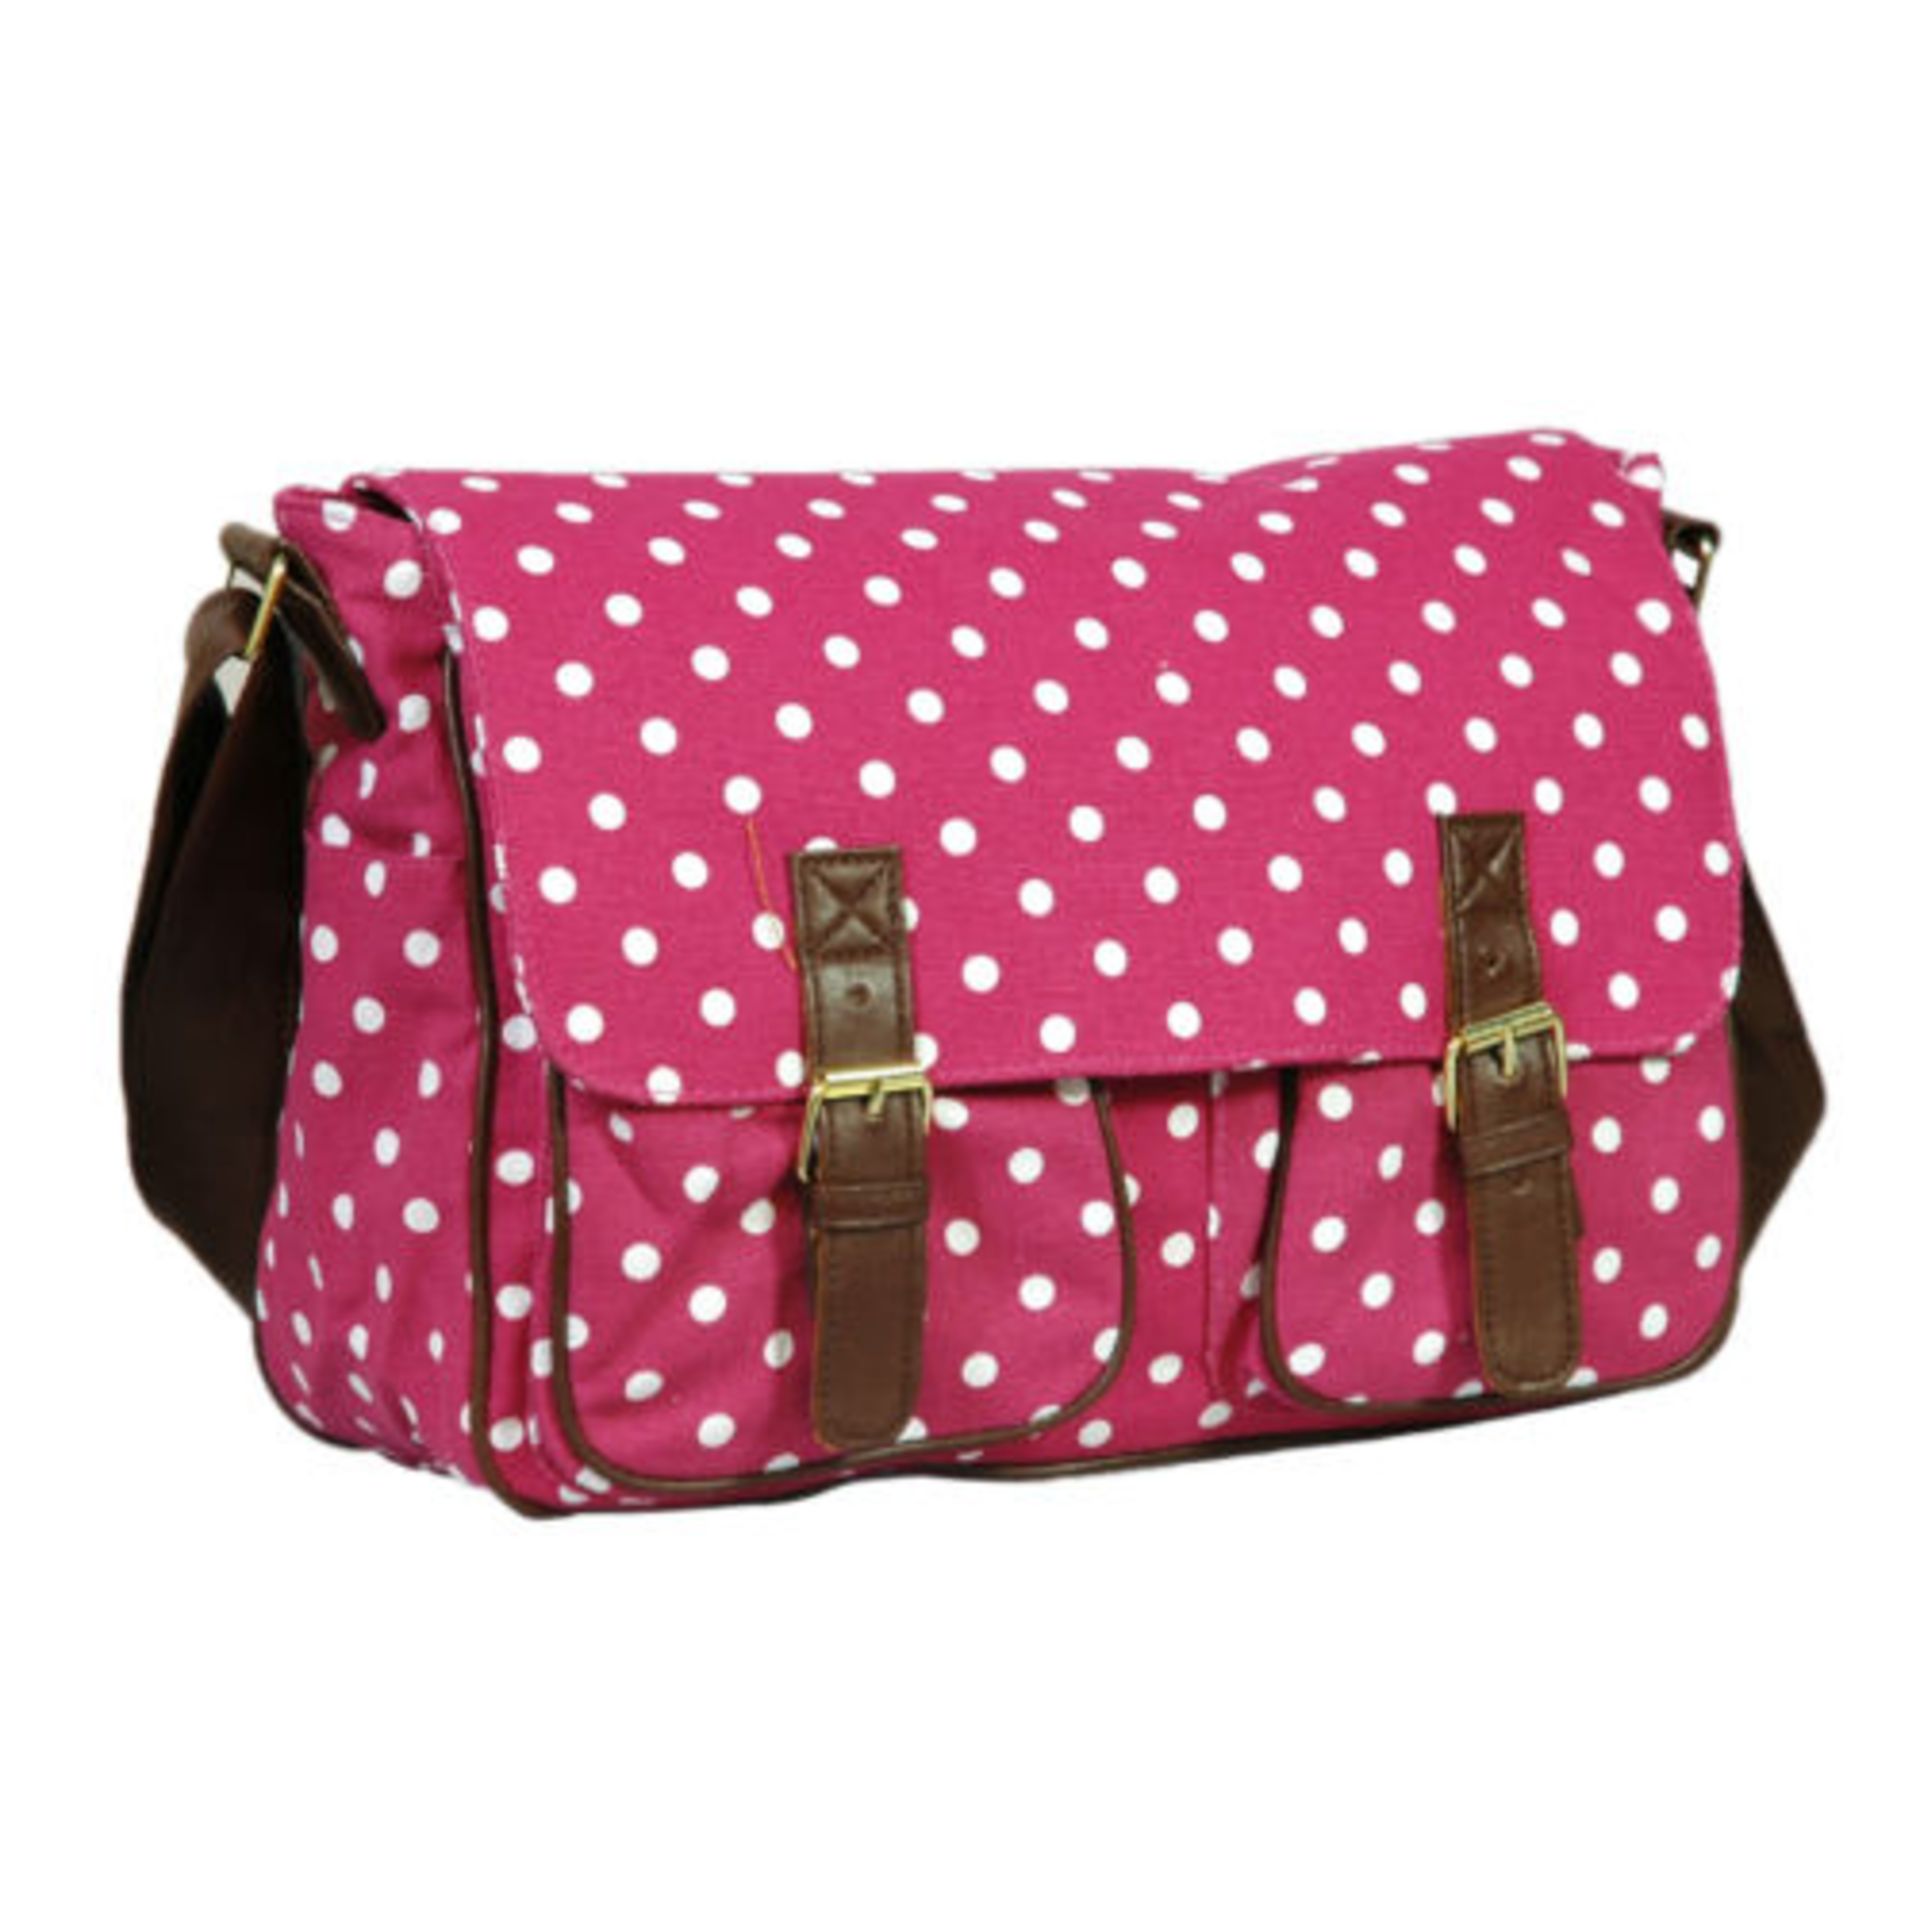 V Brand New Elizabeth Rose Polka Dot Pink/White Satchel Handbag - Brown Leather Straps X 2 YOUR